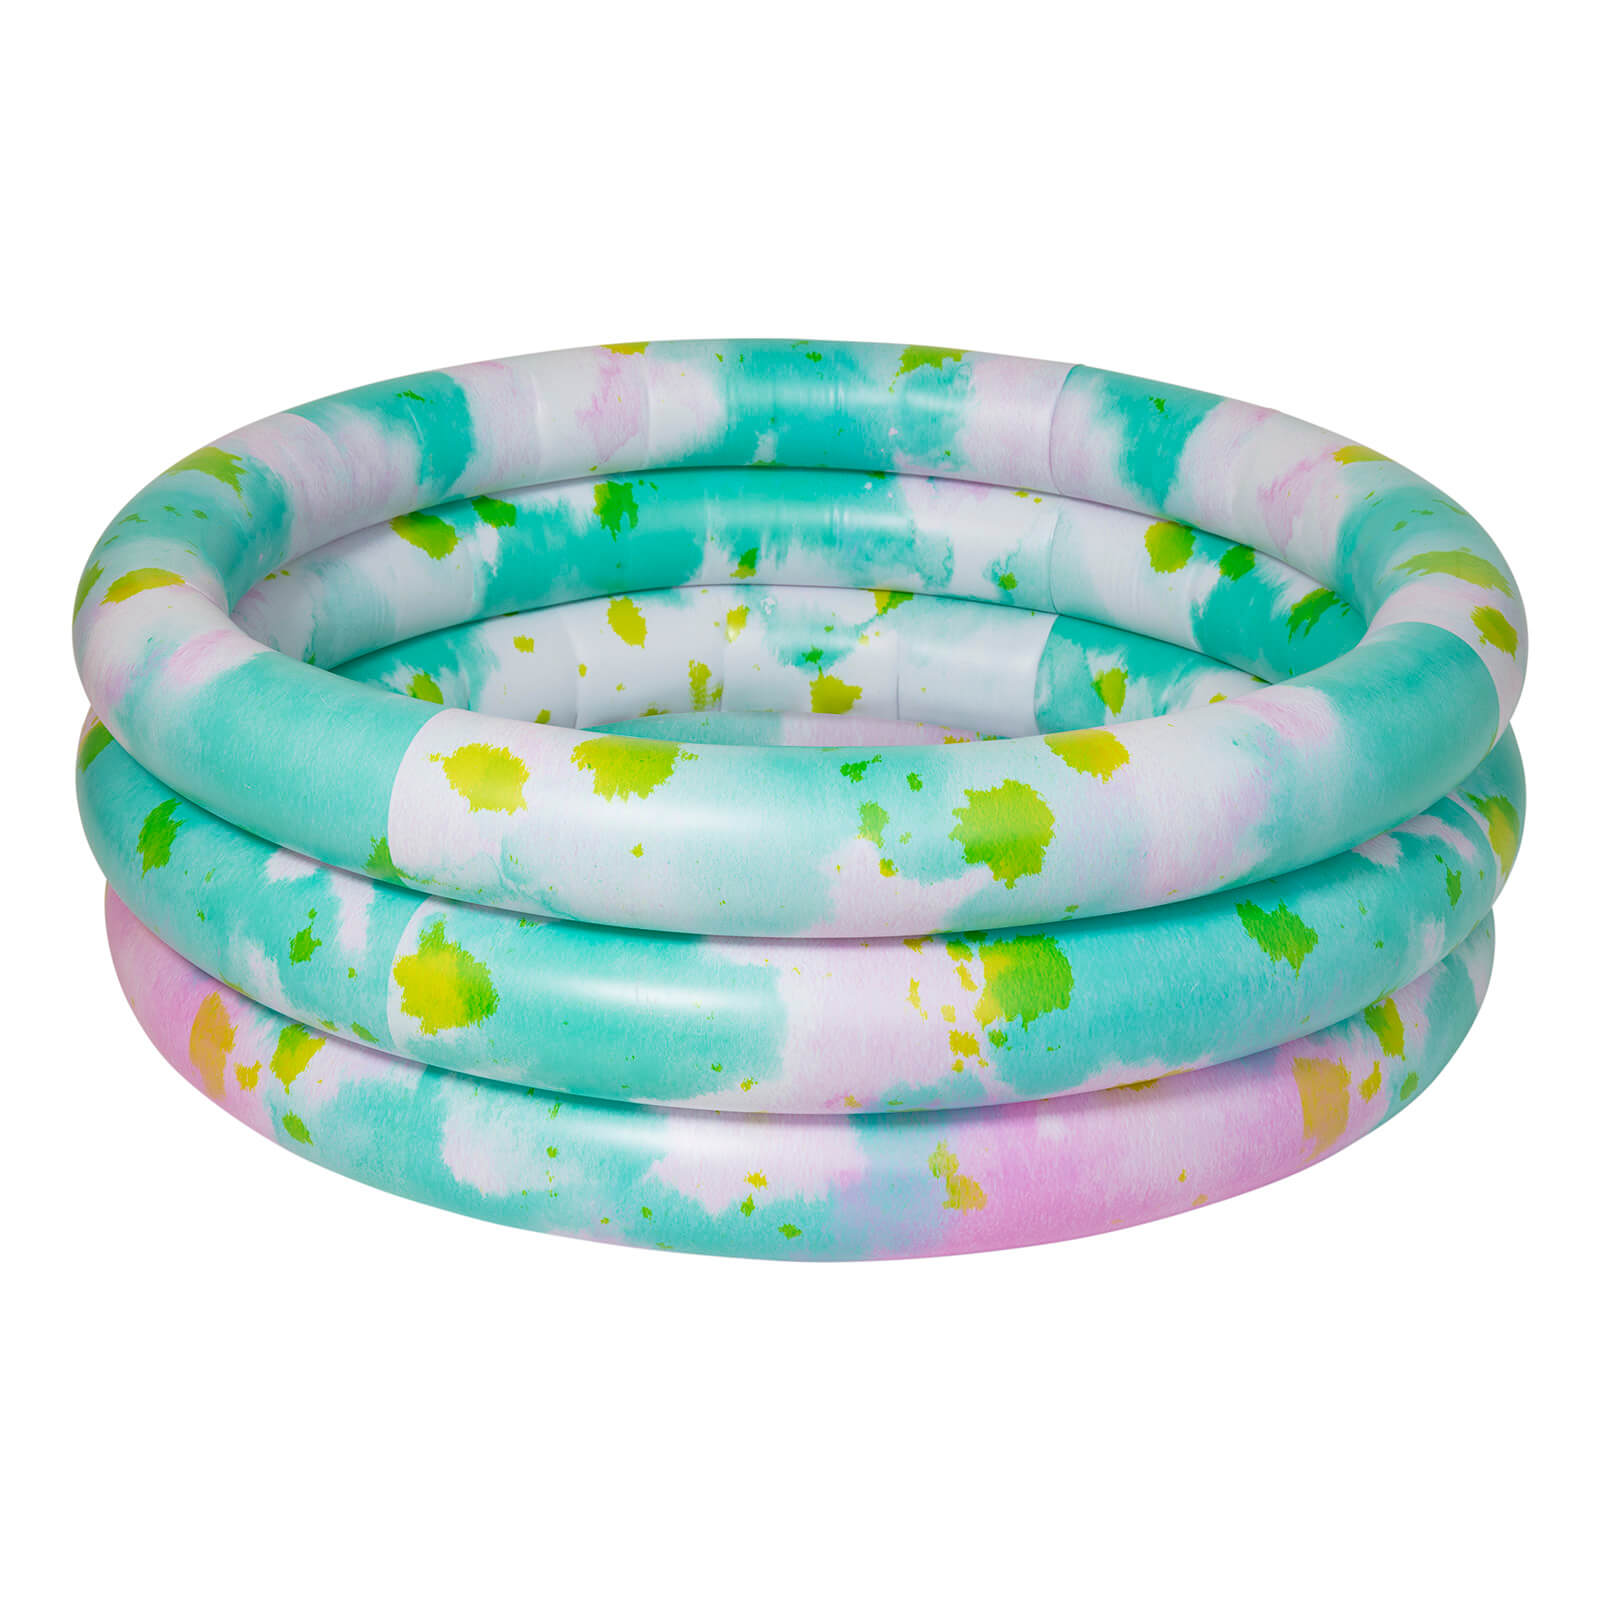 Sunnylife Inflatable Backyard Pool   Tie Dye